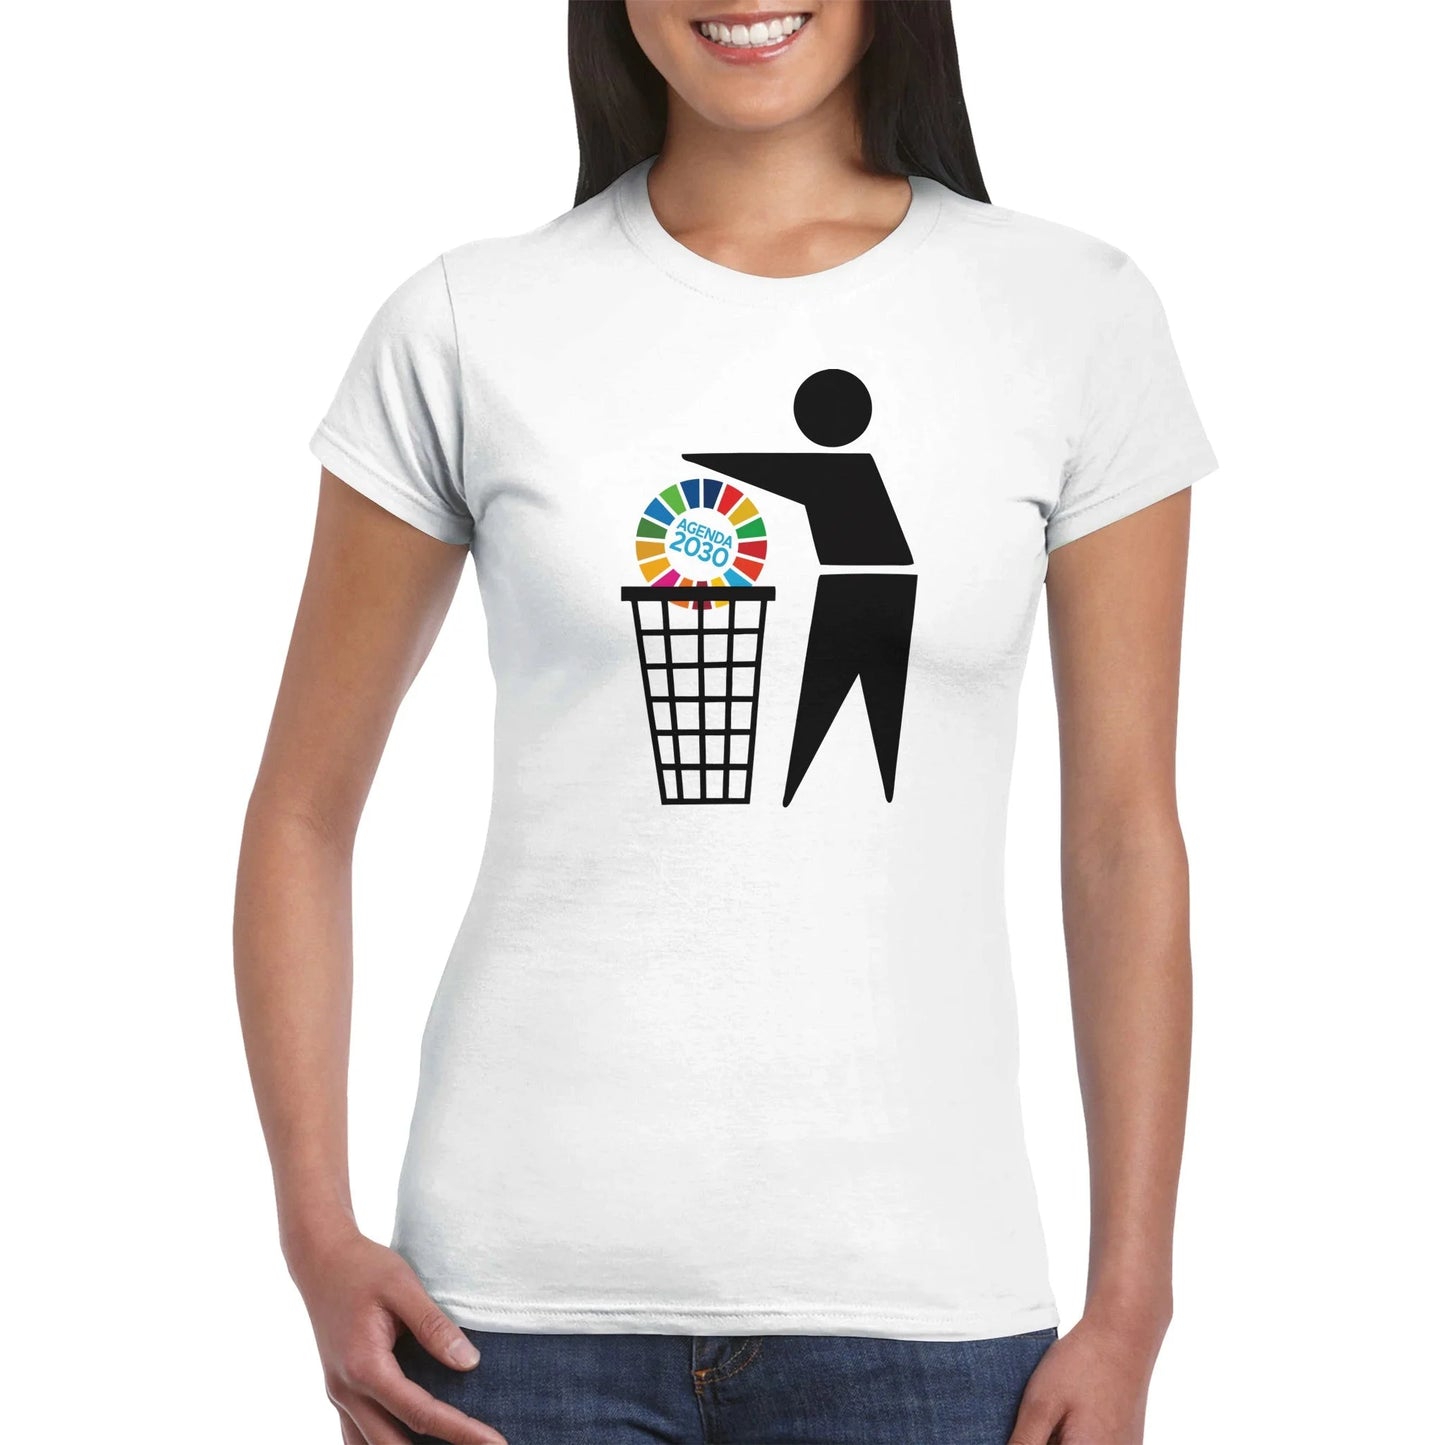 Bin Agenda 2030 Women's T-Shirt